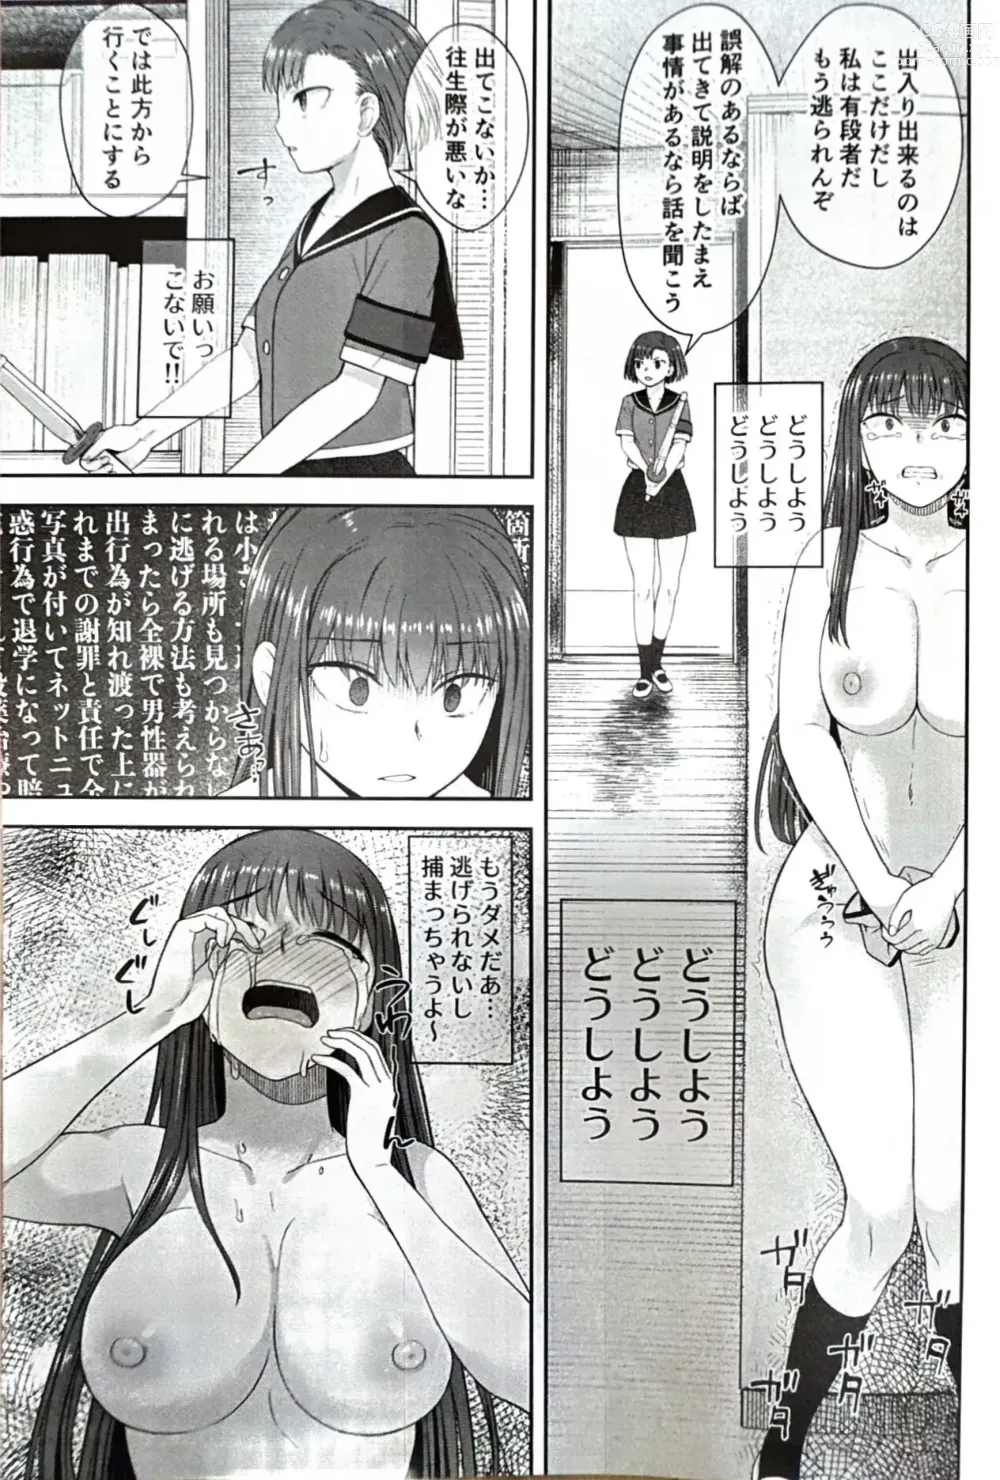 Page 18 of doujinshi Danseiki Roshutsu Jidori-han no Shoutai wa Kanojo dake ga Shitteiru.